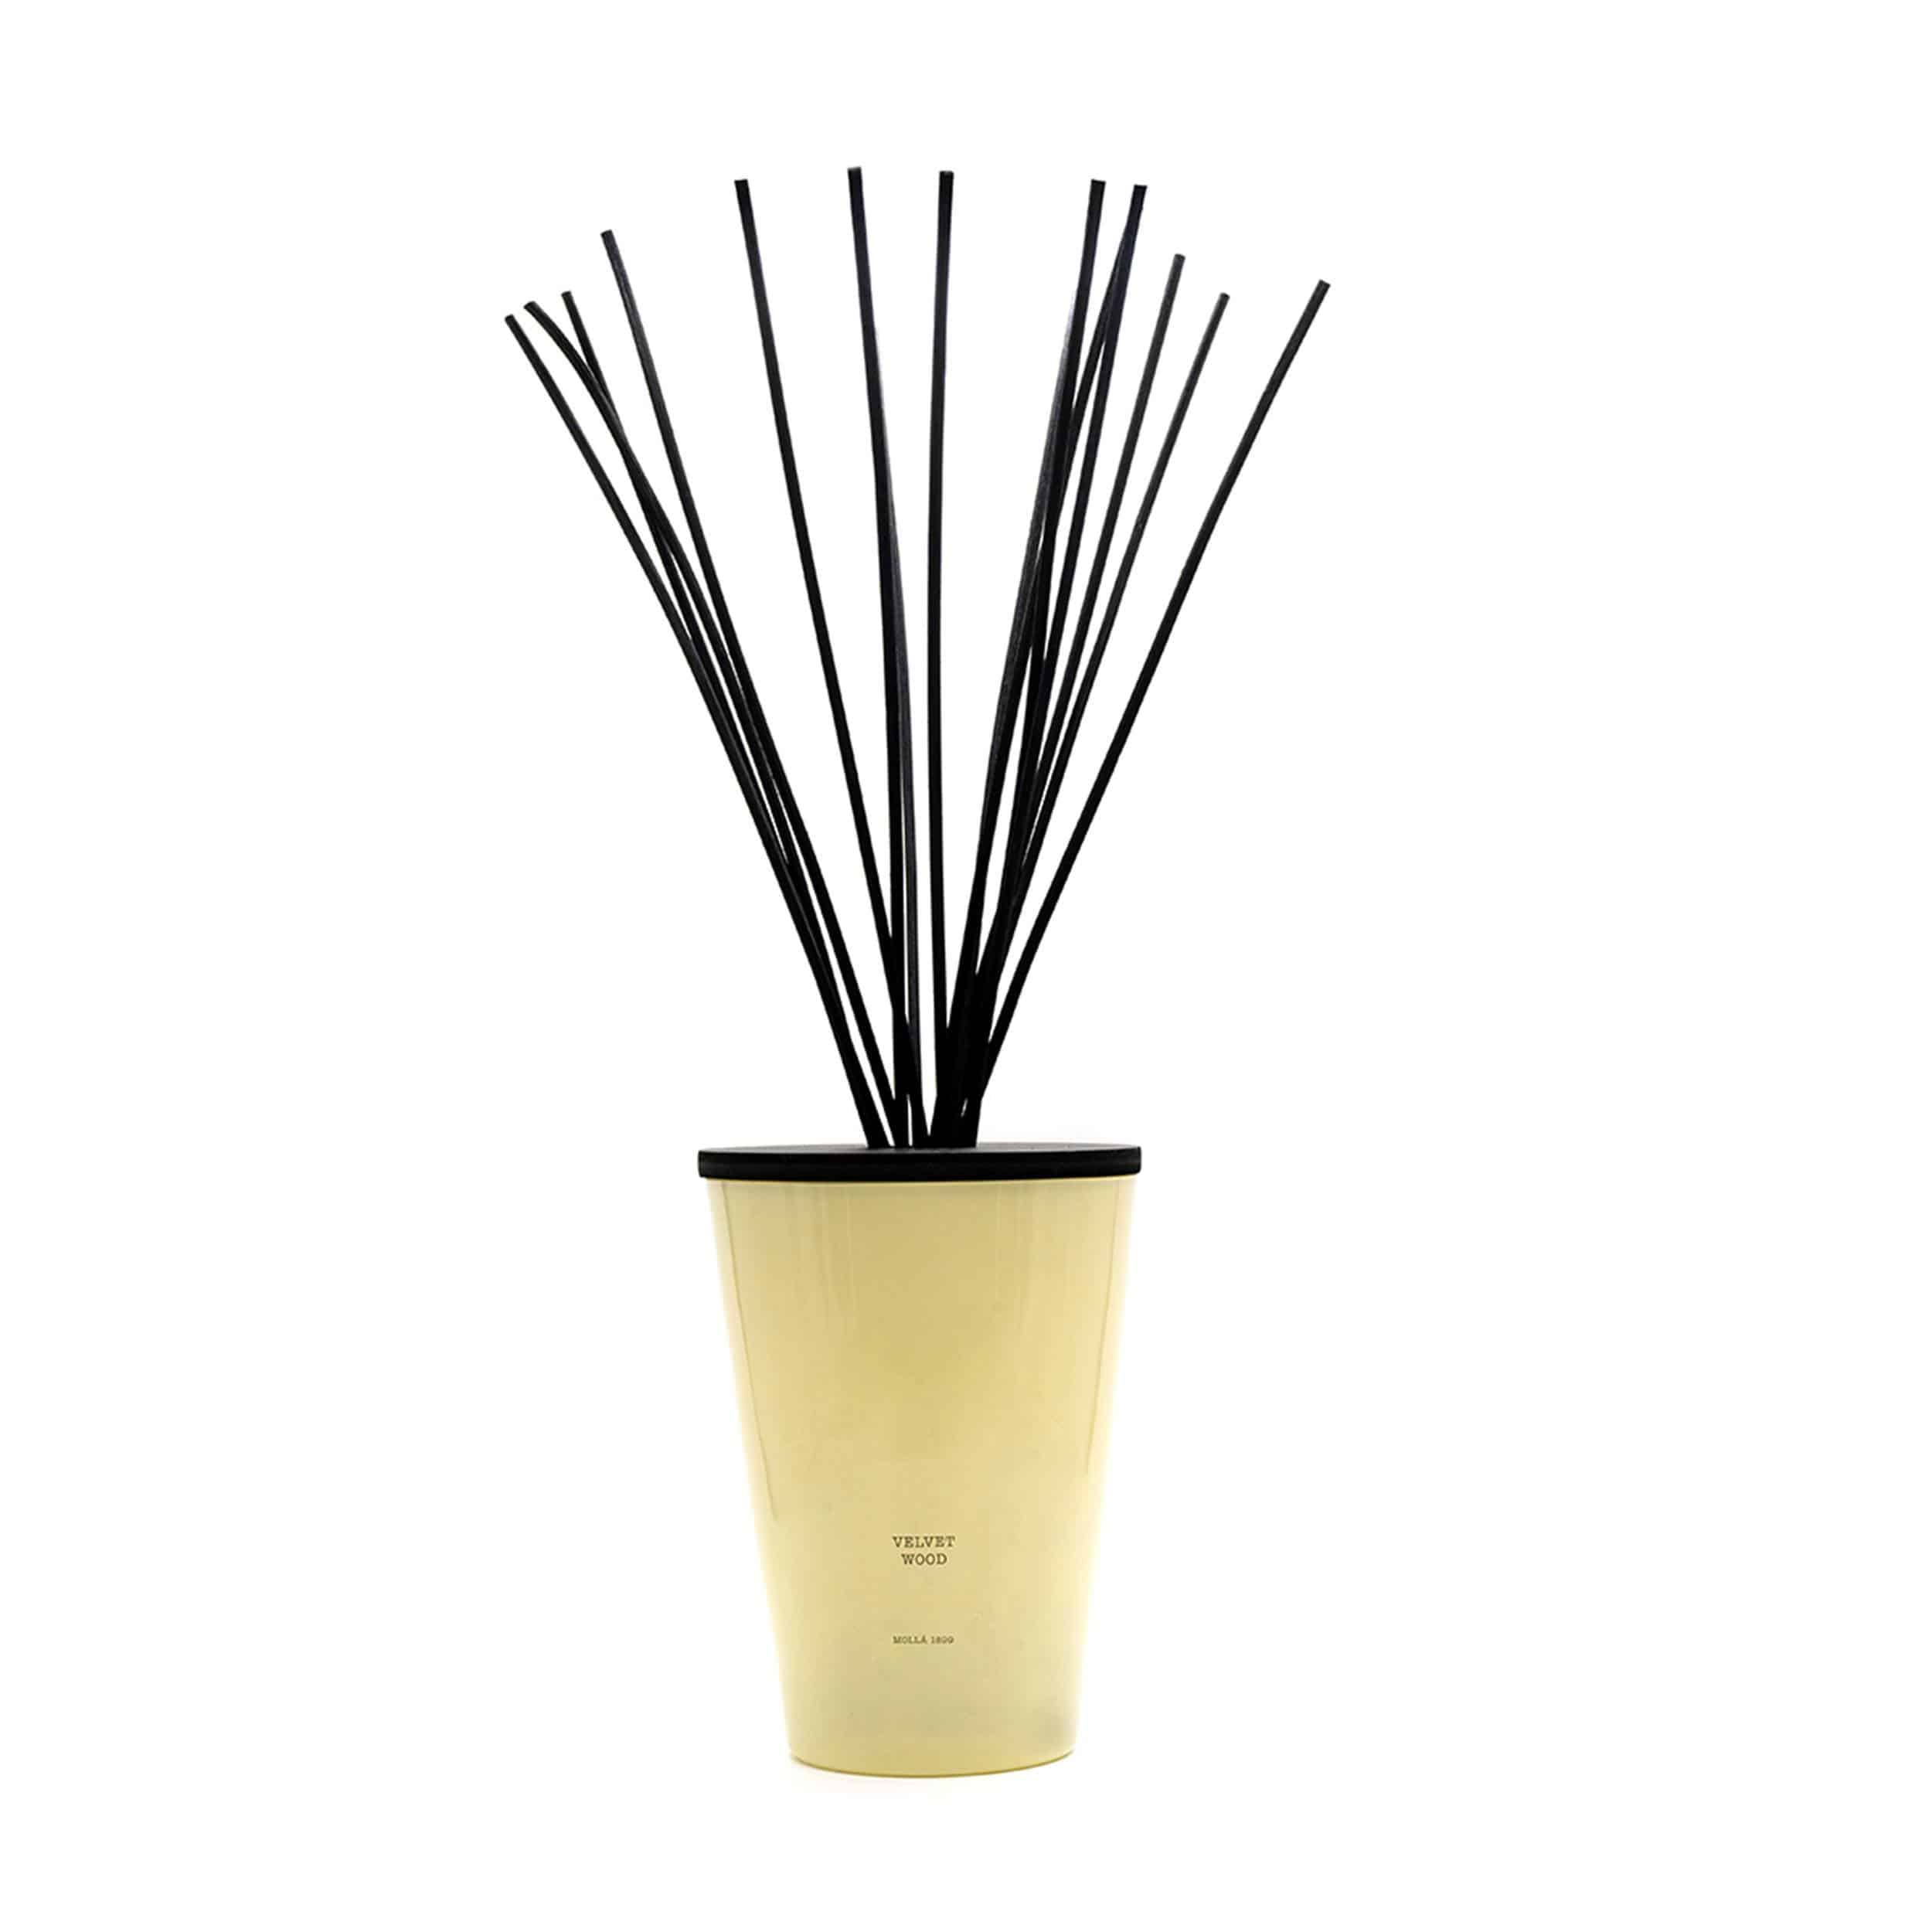 Empty Vase - Cereria Molla - 21 oz Candle - Amber & SandalWood